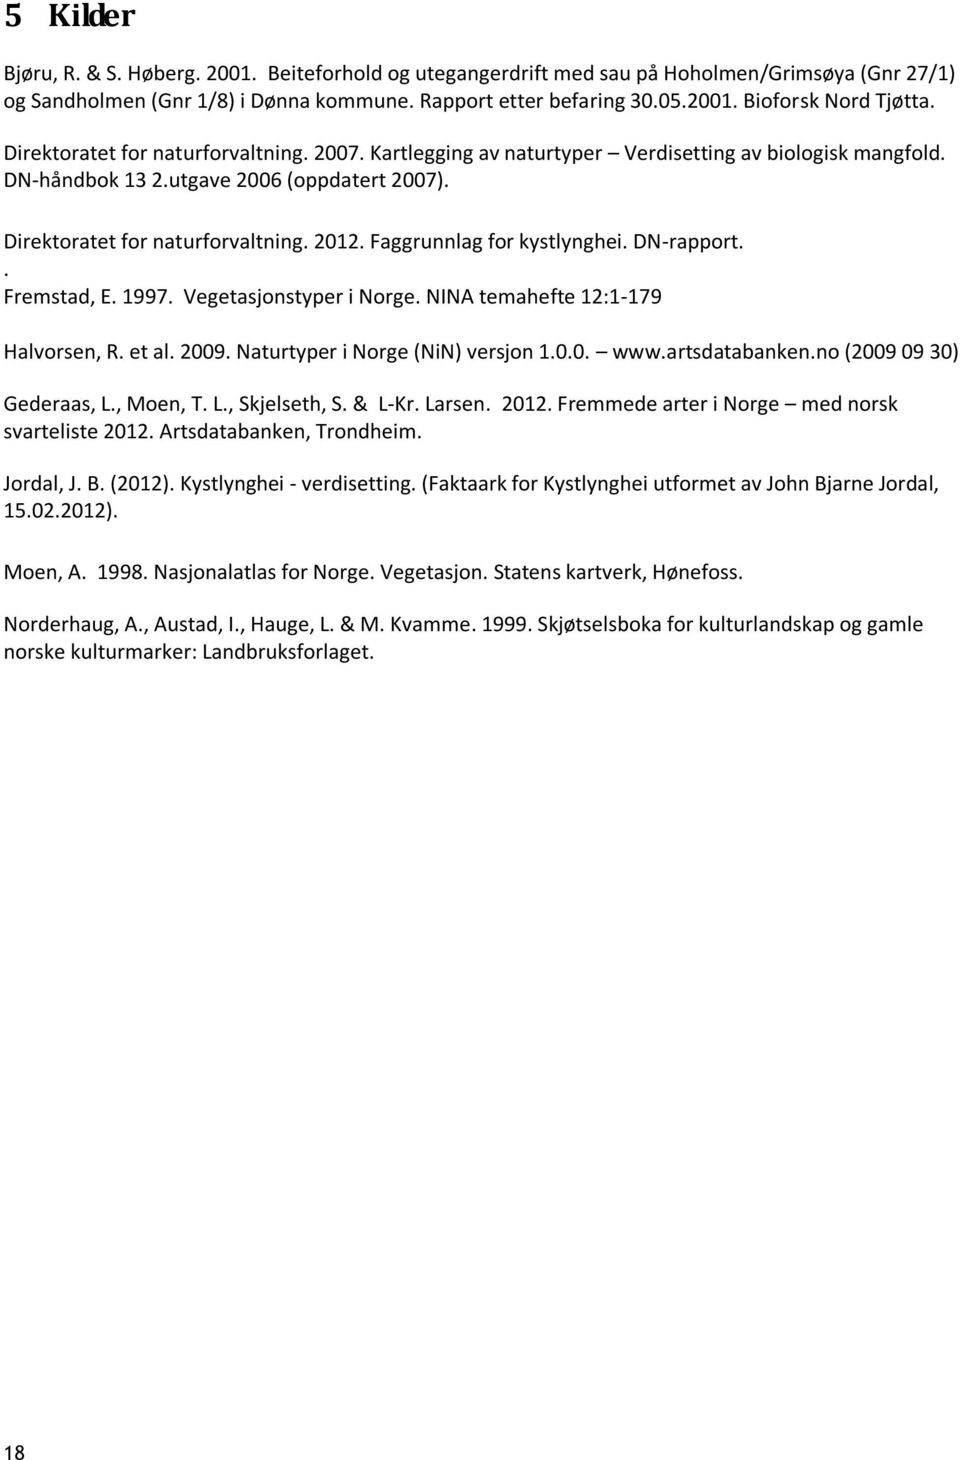 Faggrunnlag for kystlynghei. DN-rapport.. Fremstad, E. 1997. Vegetasjonstyper i Norge. NINA temahefte 12:1-179 Halvorsen, R. et al. 2009. Naturtyper i Norge (NiN) versjon 1.0.0. www.artsdatabanken.